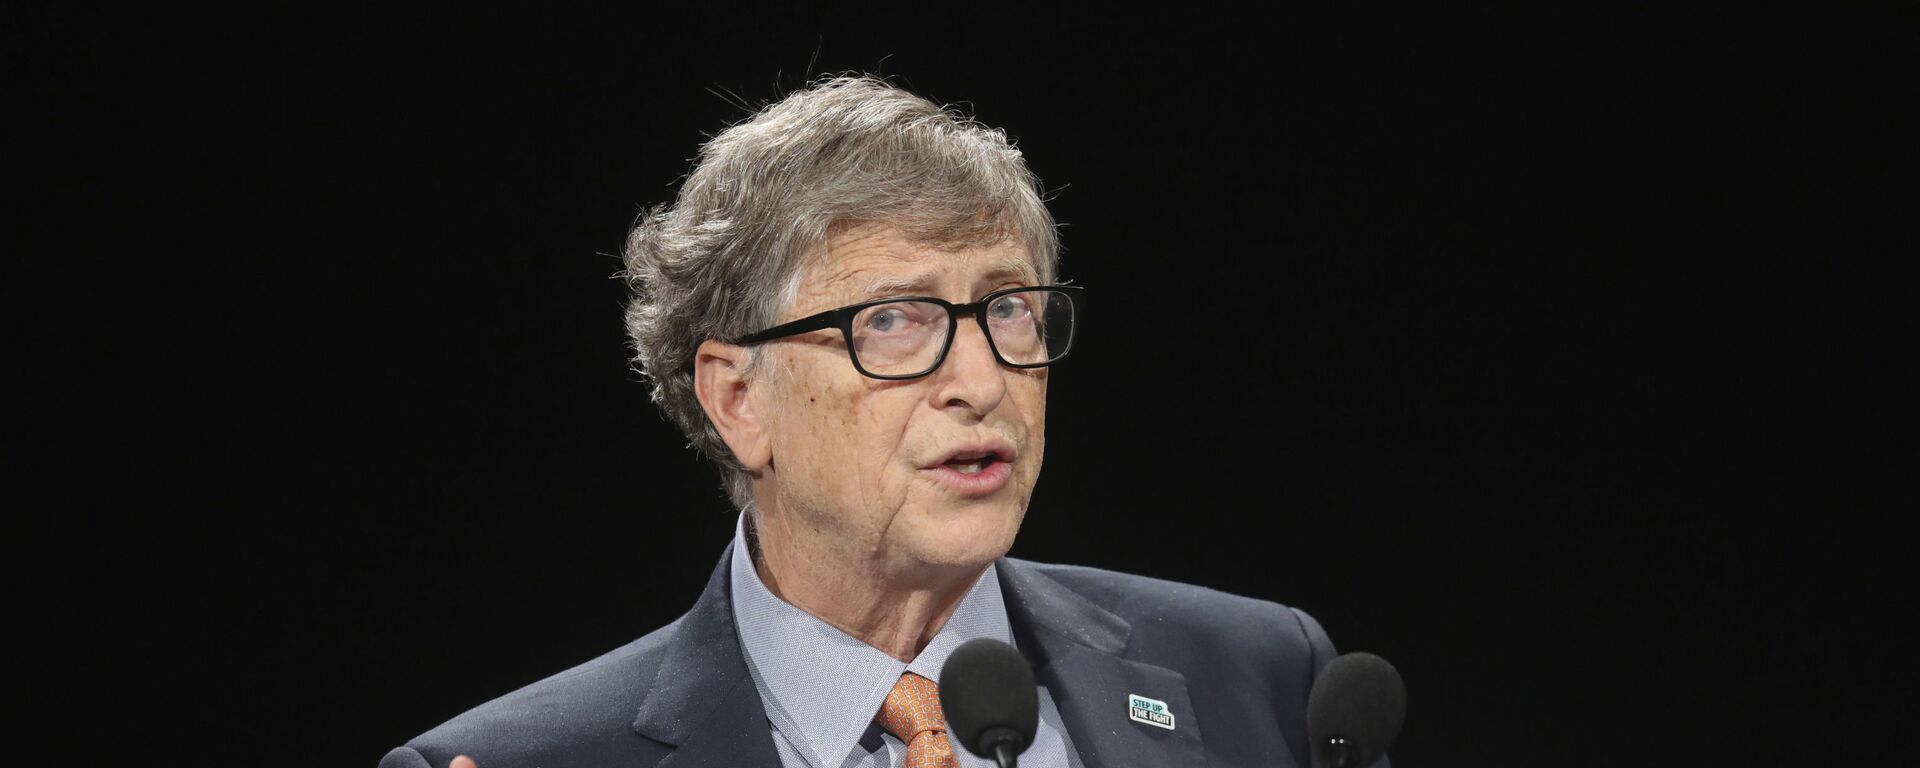 Bill Gates, multimillonario y filántropo estadounidense - Sputnik Mundo, 1920, 18.02.2021